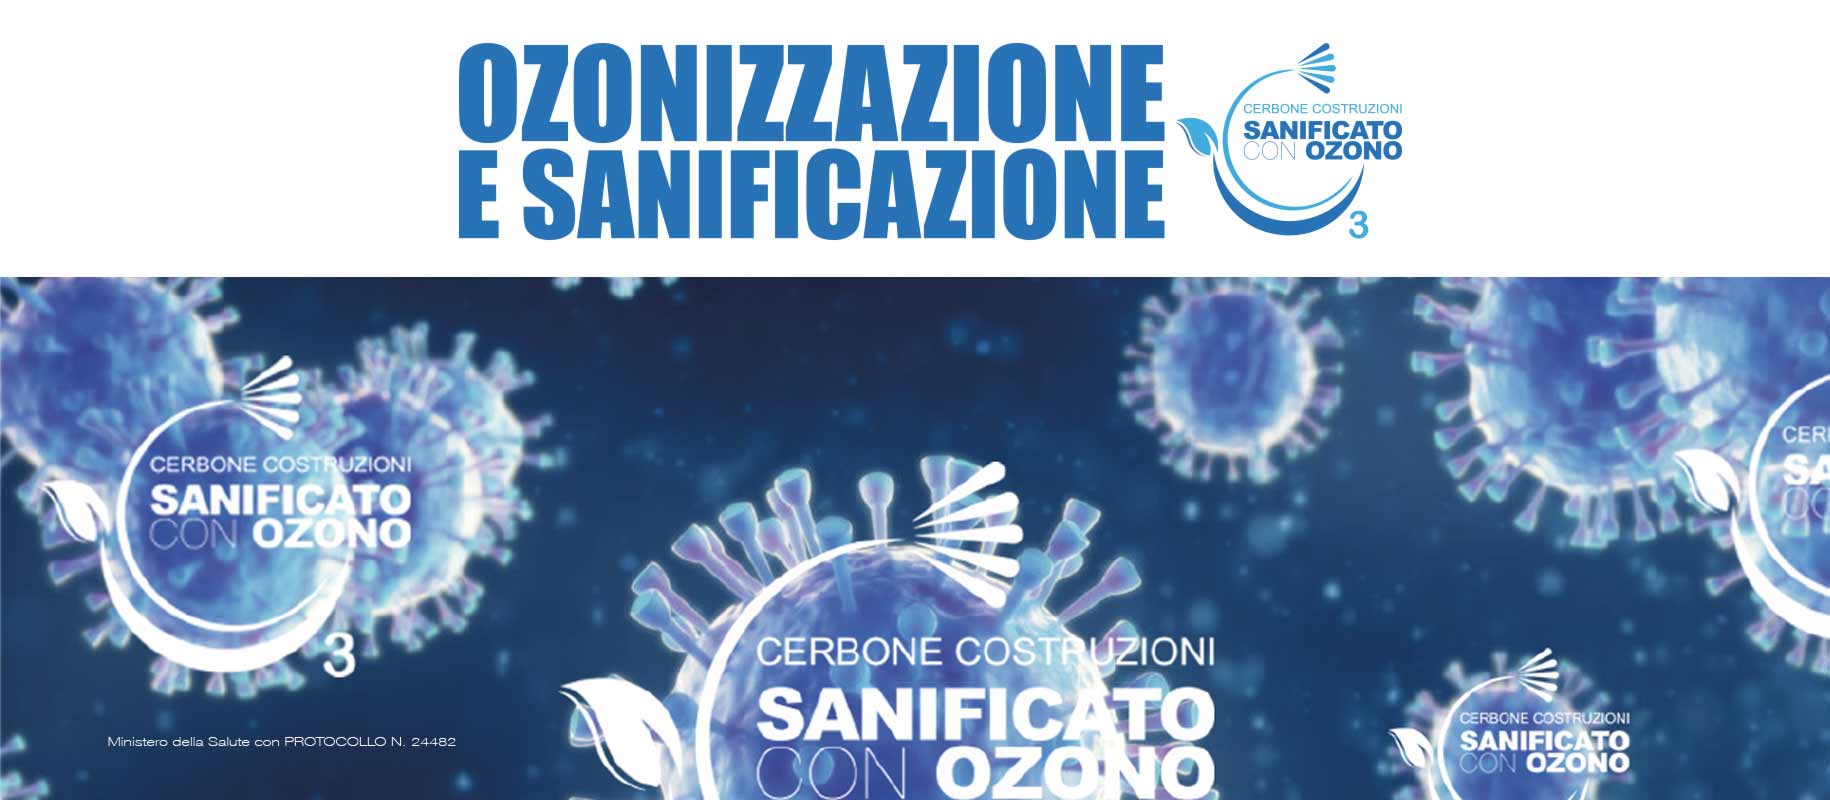 Sanificazione con Ozono Cerbone Costruzioni Trieste